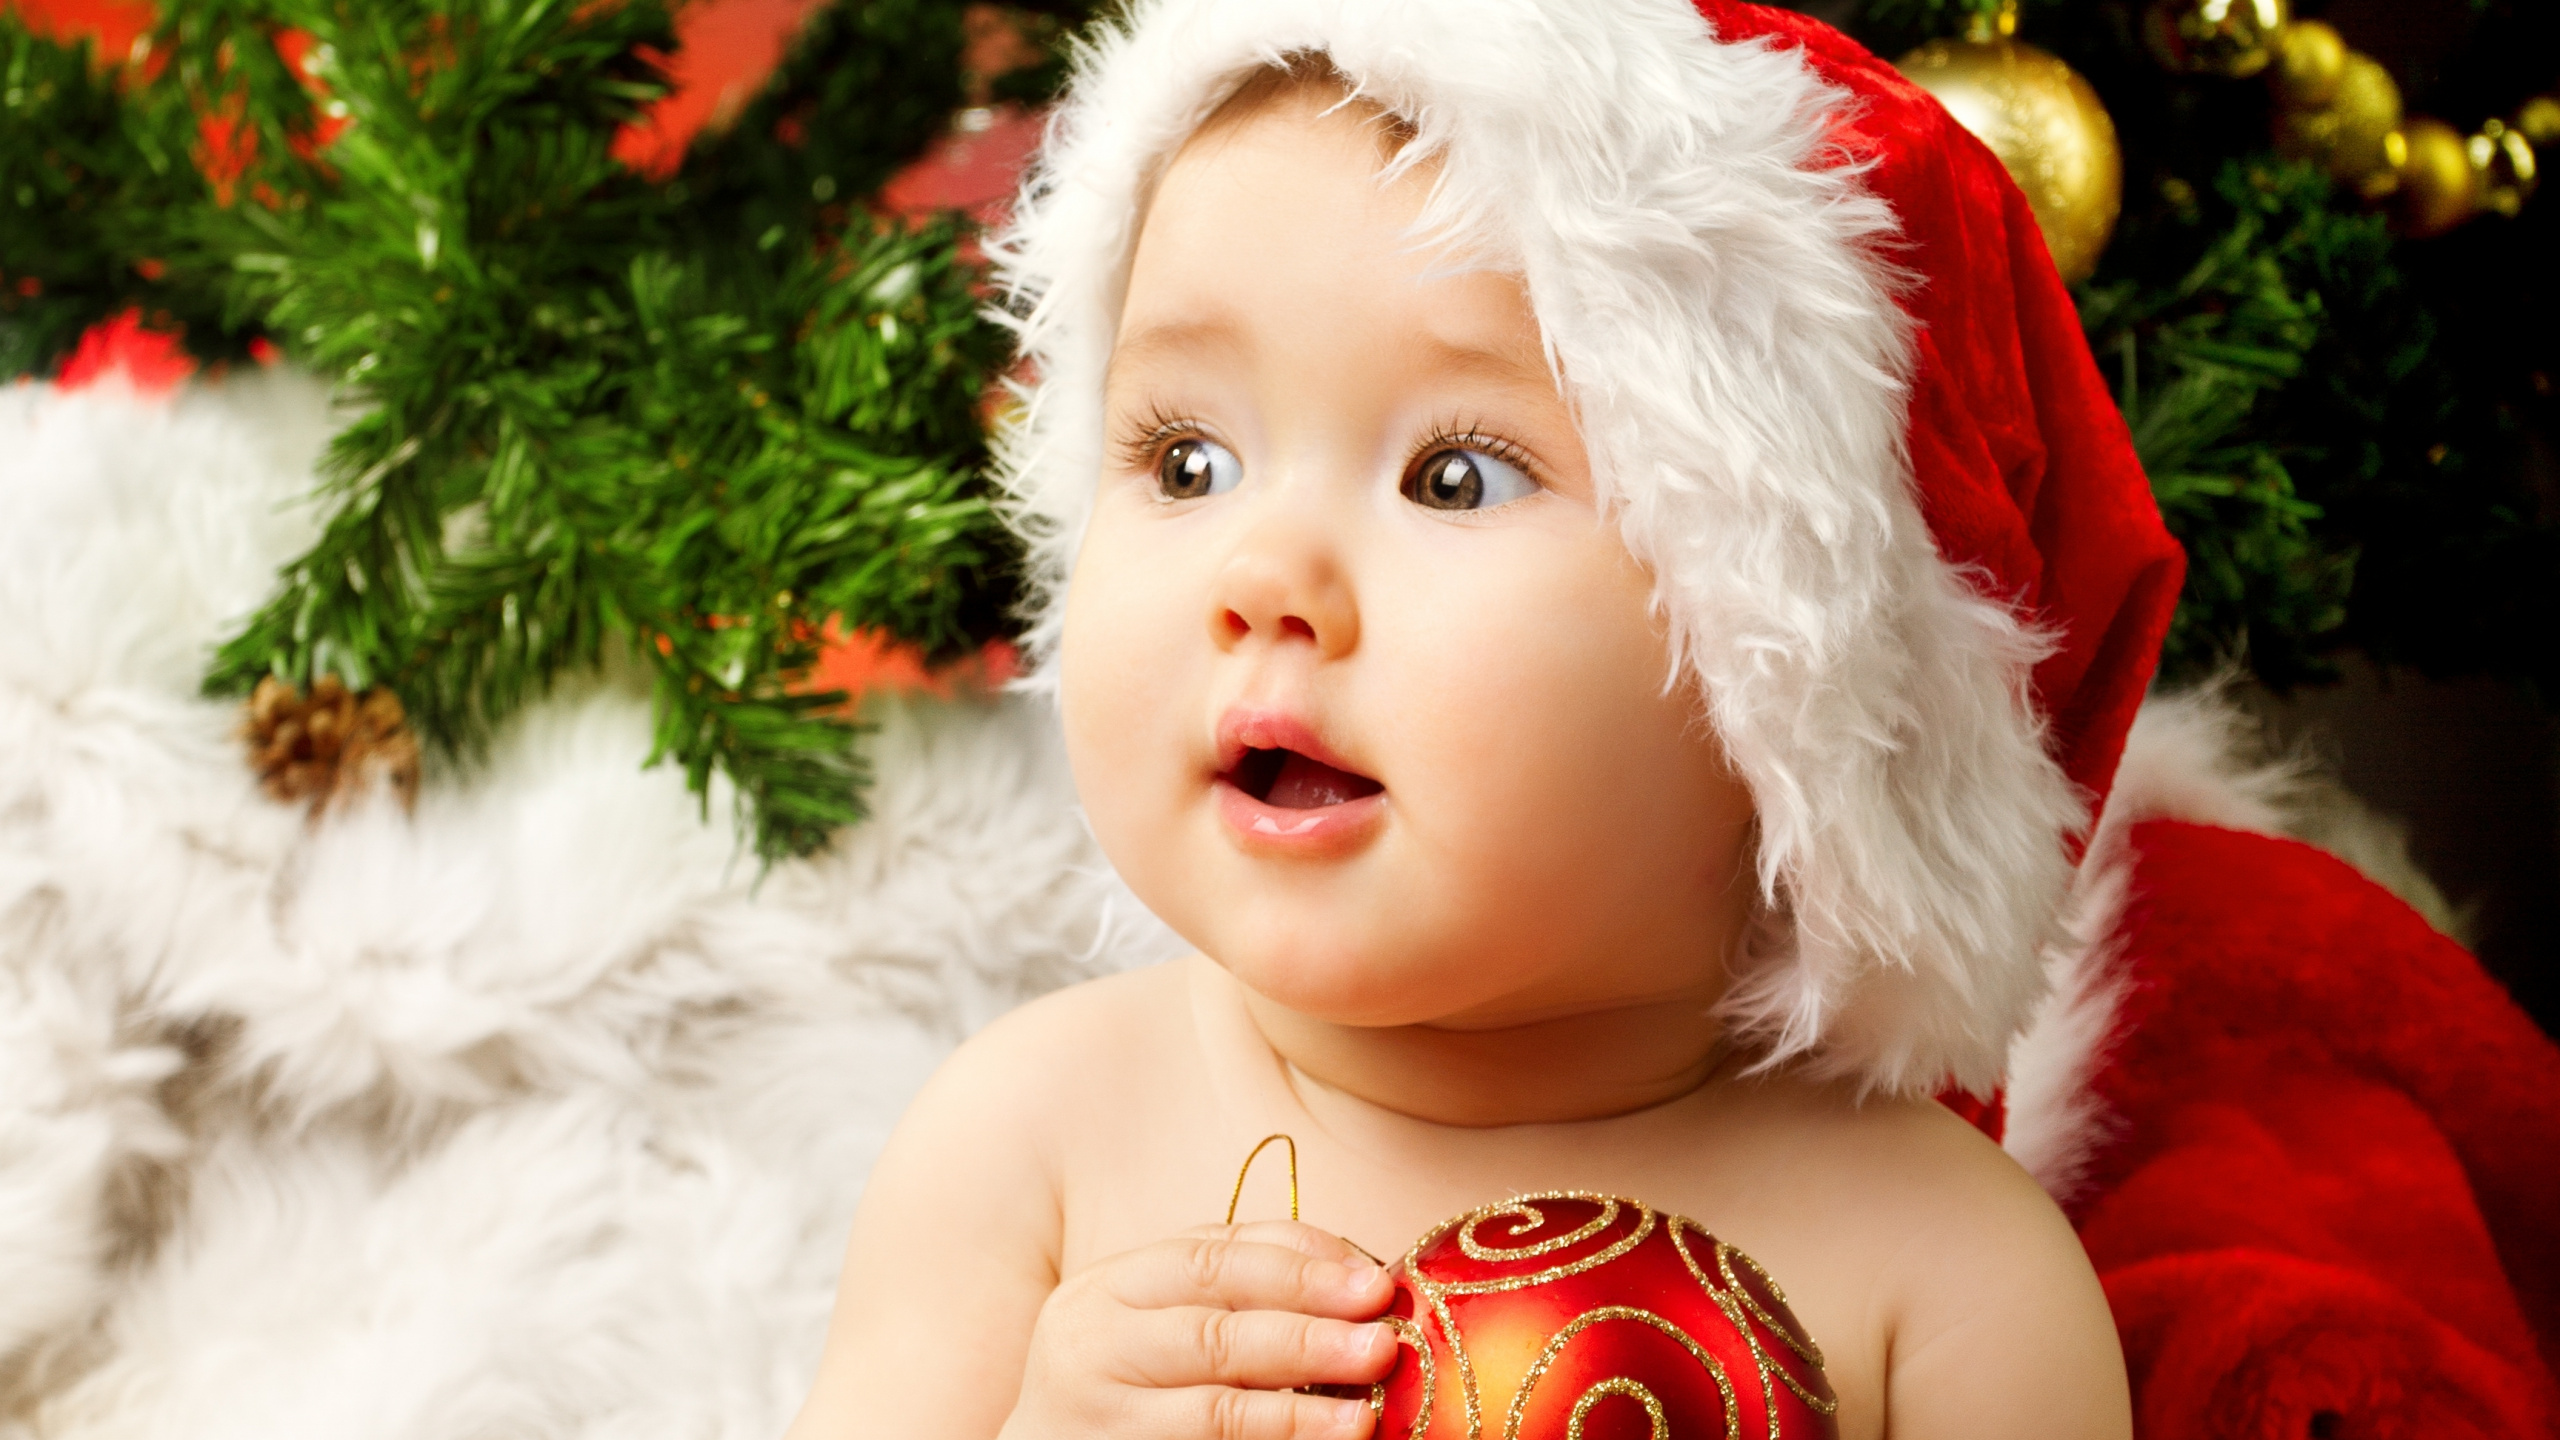 圣诞节那天, 婴儿, 可爱, 圣诞节, 儿童 壁纸 2560x1440 允许